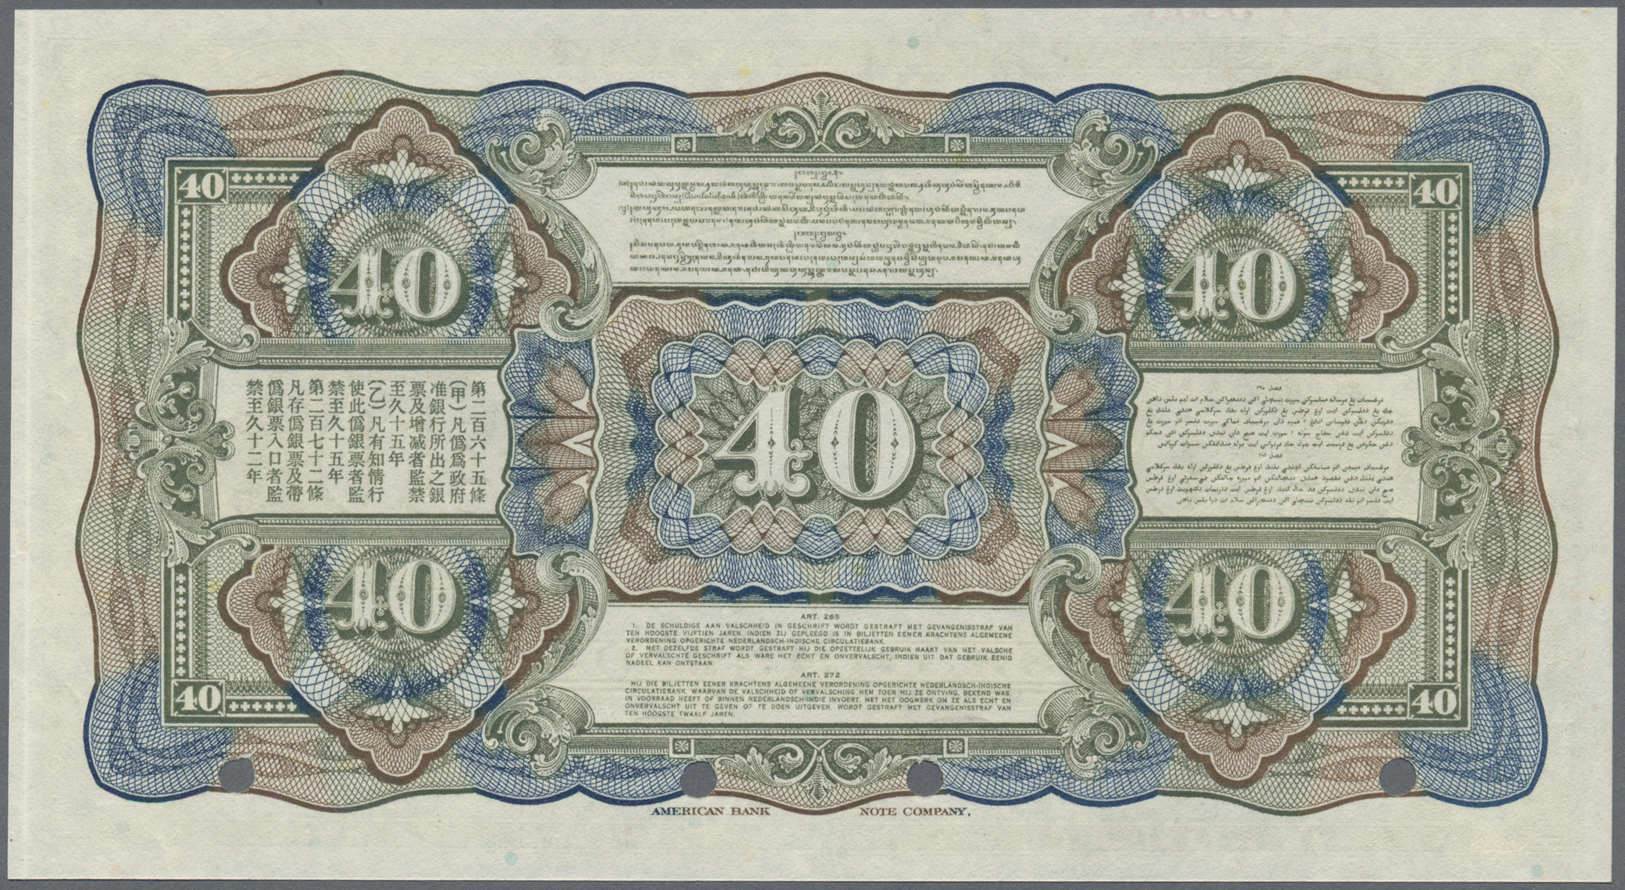 01795 Netherlands Indies / Niederländisch Indien: 40 Gulden ND Specimen P. 68s In Condition: UNC. - Dutch East Indies